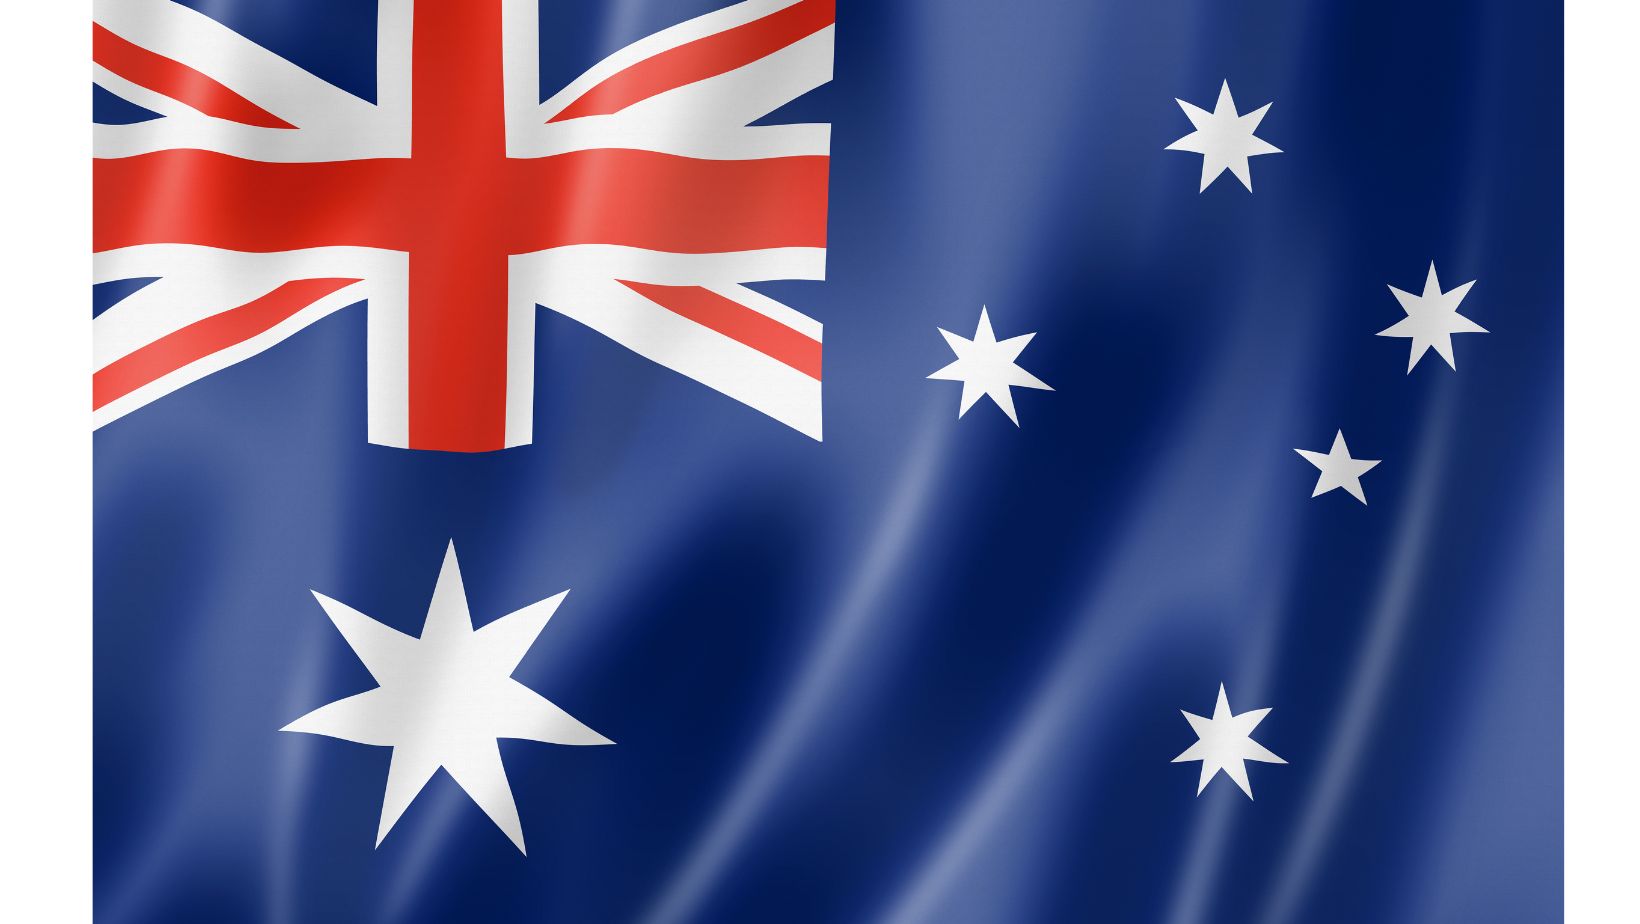 Bandeira australiana: estrelas brancas e listras cruzadas vermelhas e brancas sobre fundo azul